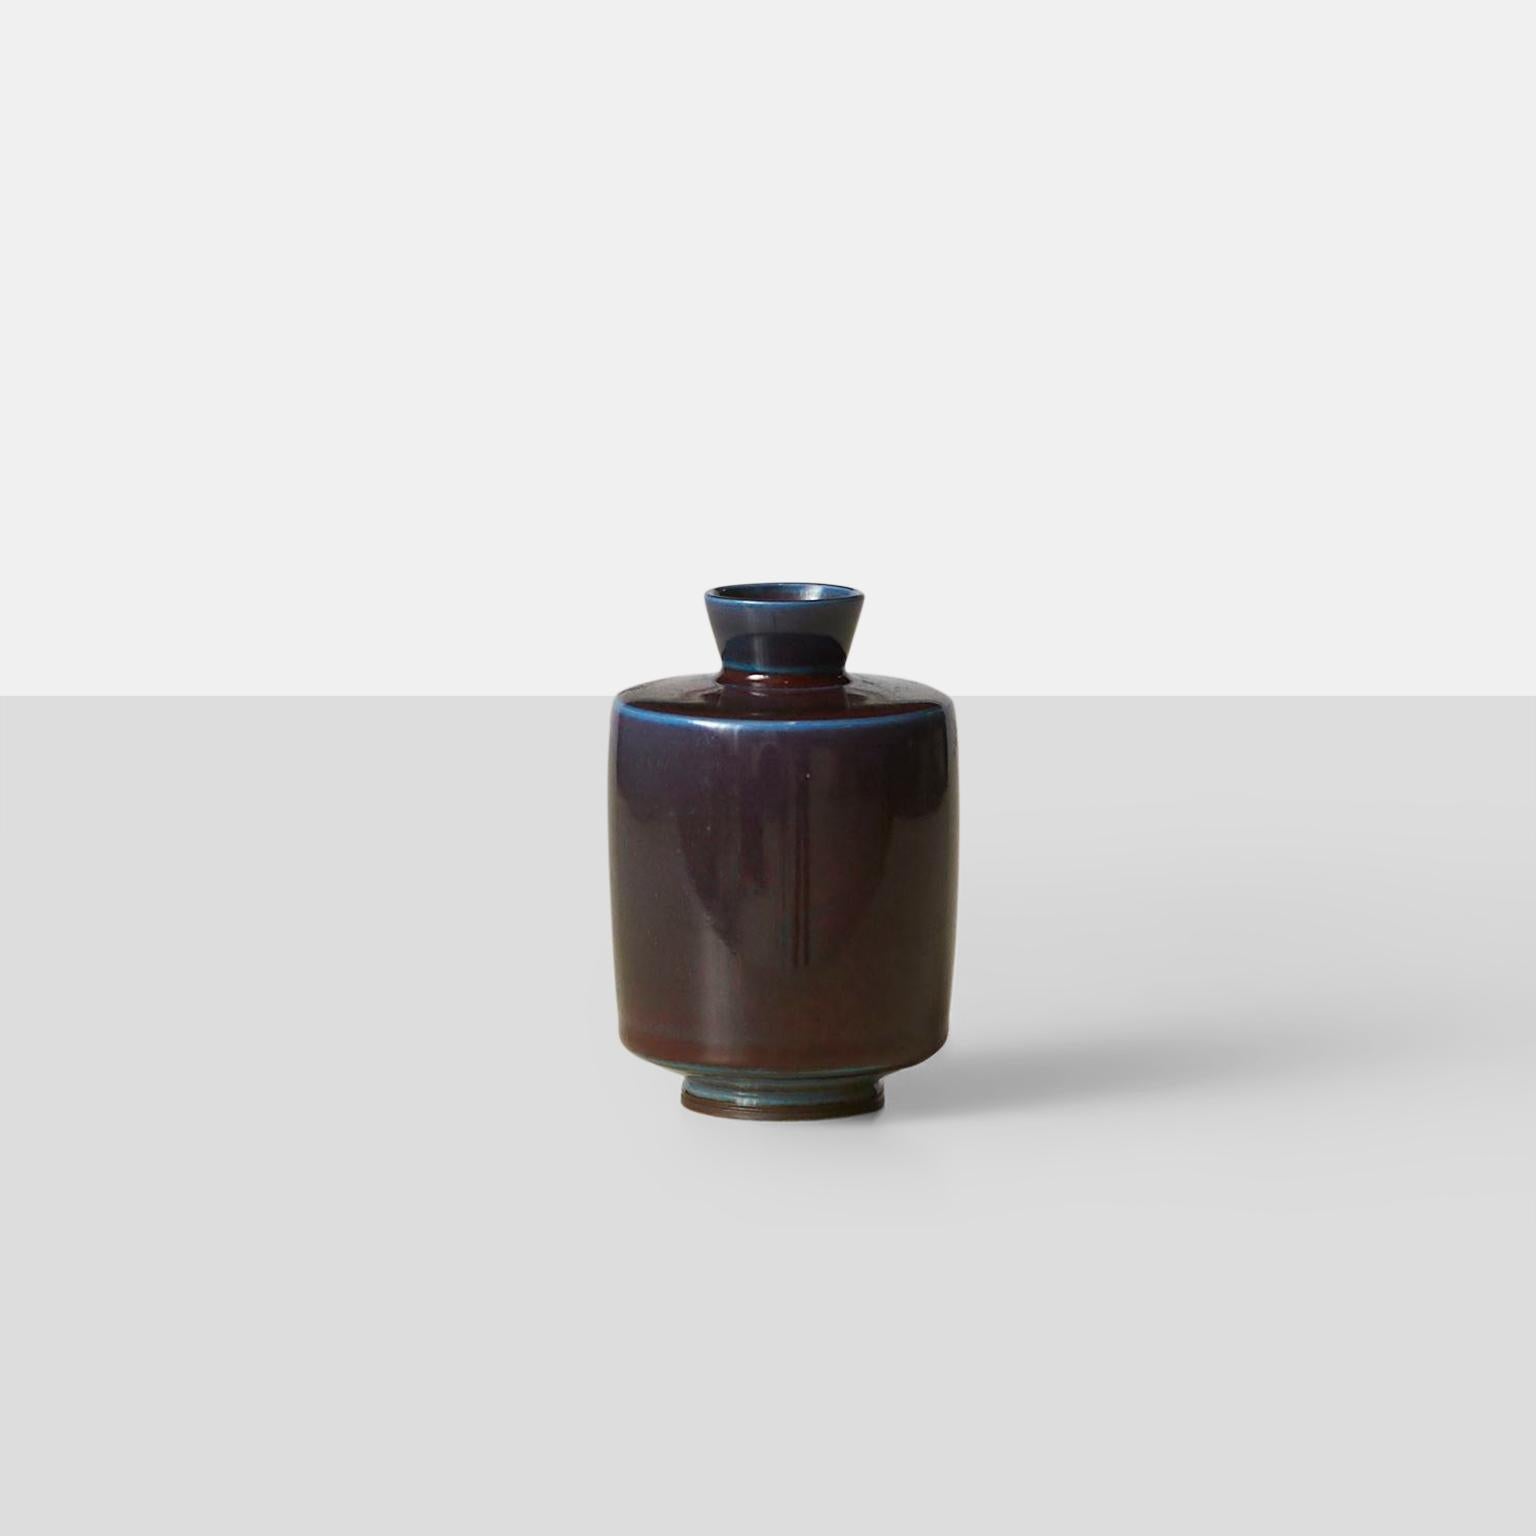 Von Berndt Friberg, eine Vase aus Steinzeug mit Glasurrhythmen in Violett- und Blautönen. Sehr interessanter Rollkragenpullover. Signiert Friberg, mit der Handmarke des Studios und dem Datum (1967). 